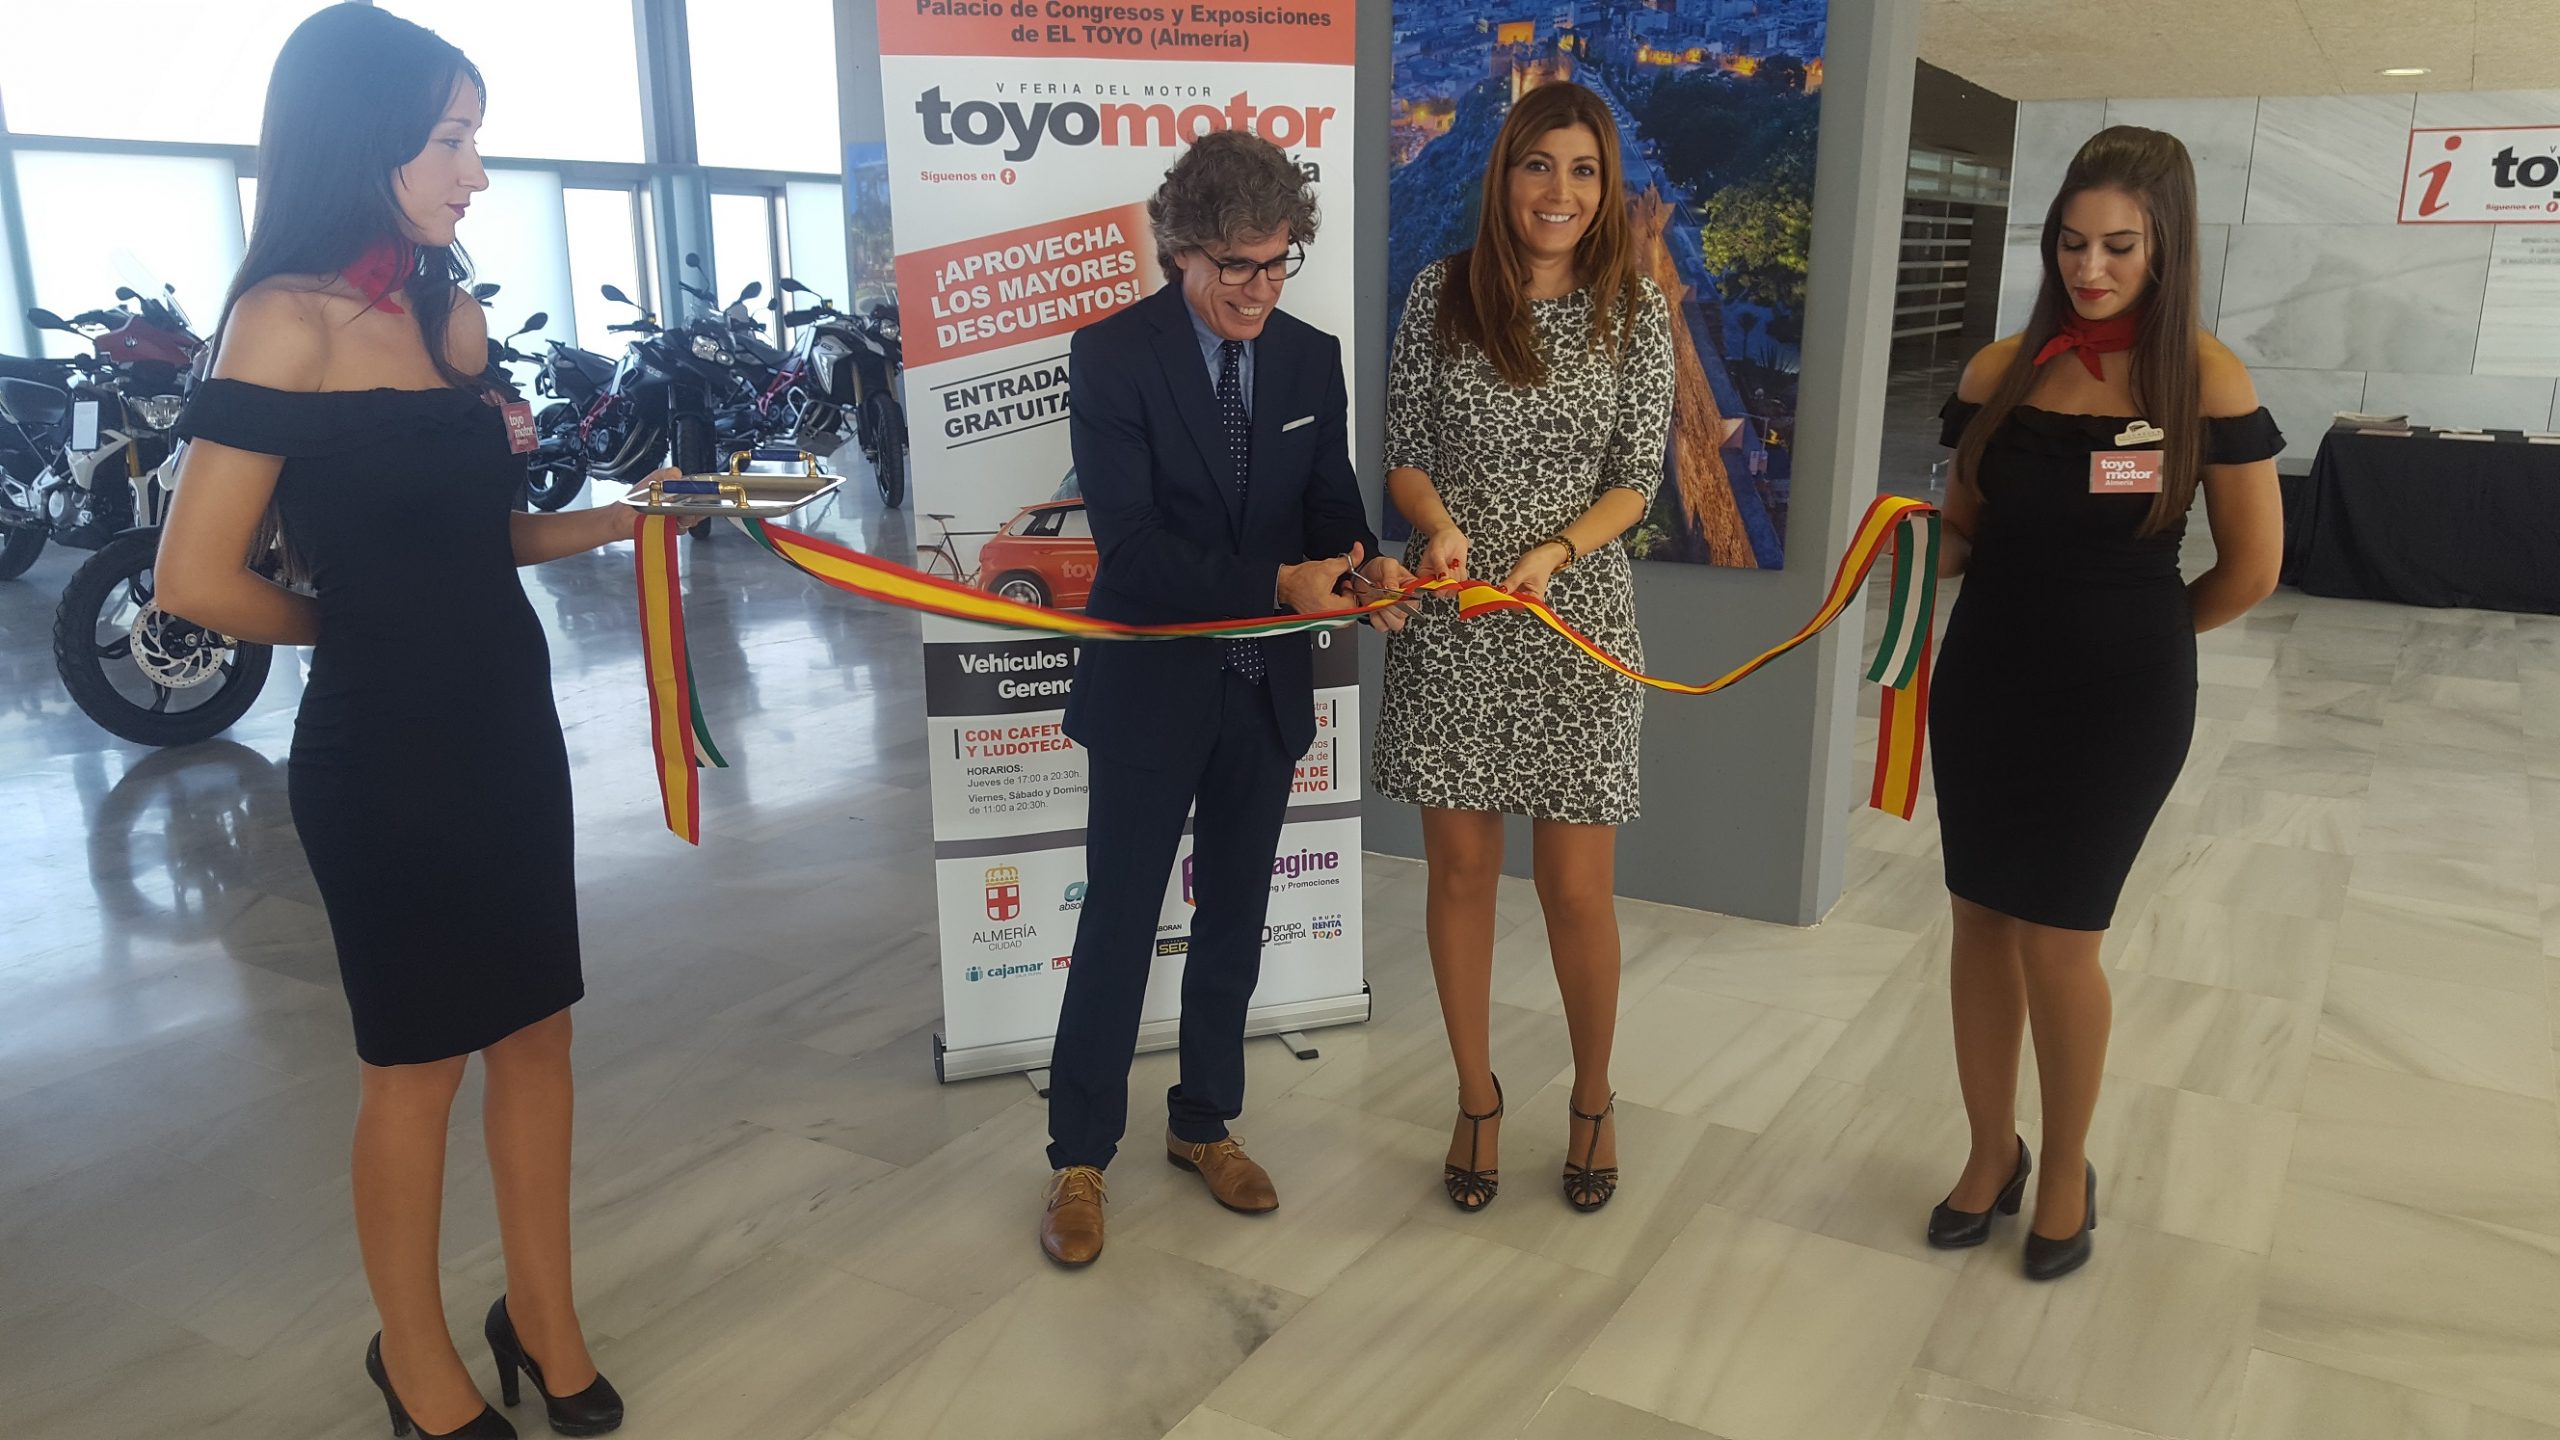 Inauguración Toyomotor2 scaled - Turismo Almería